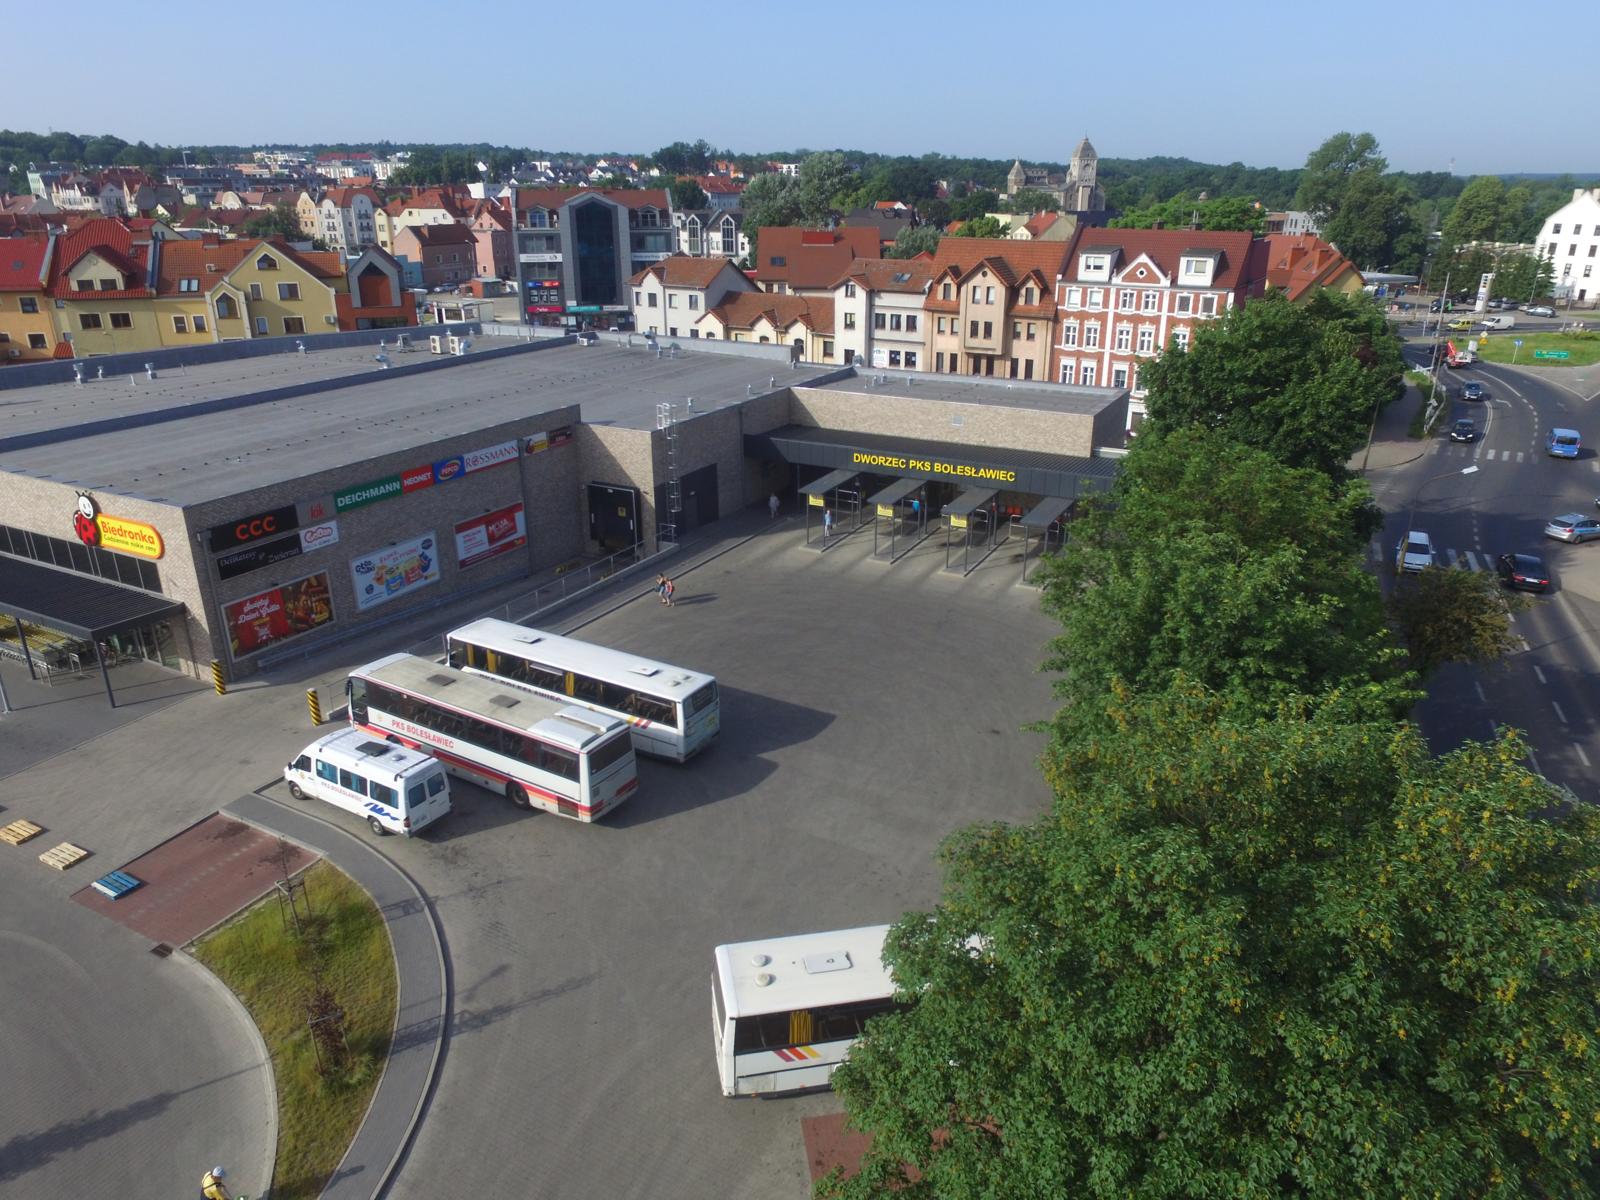 25 nowych linii autobusowych - powiat bolesławiecki rekordzistą